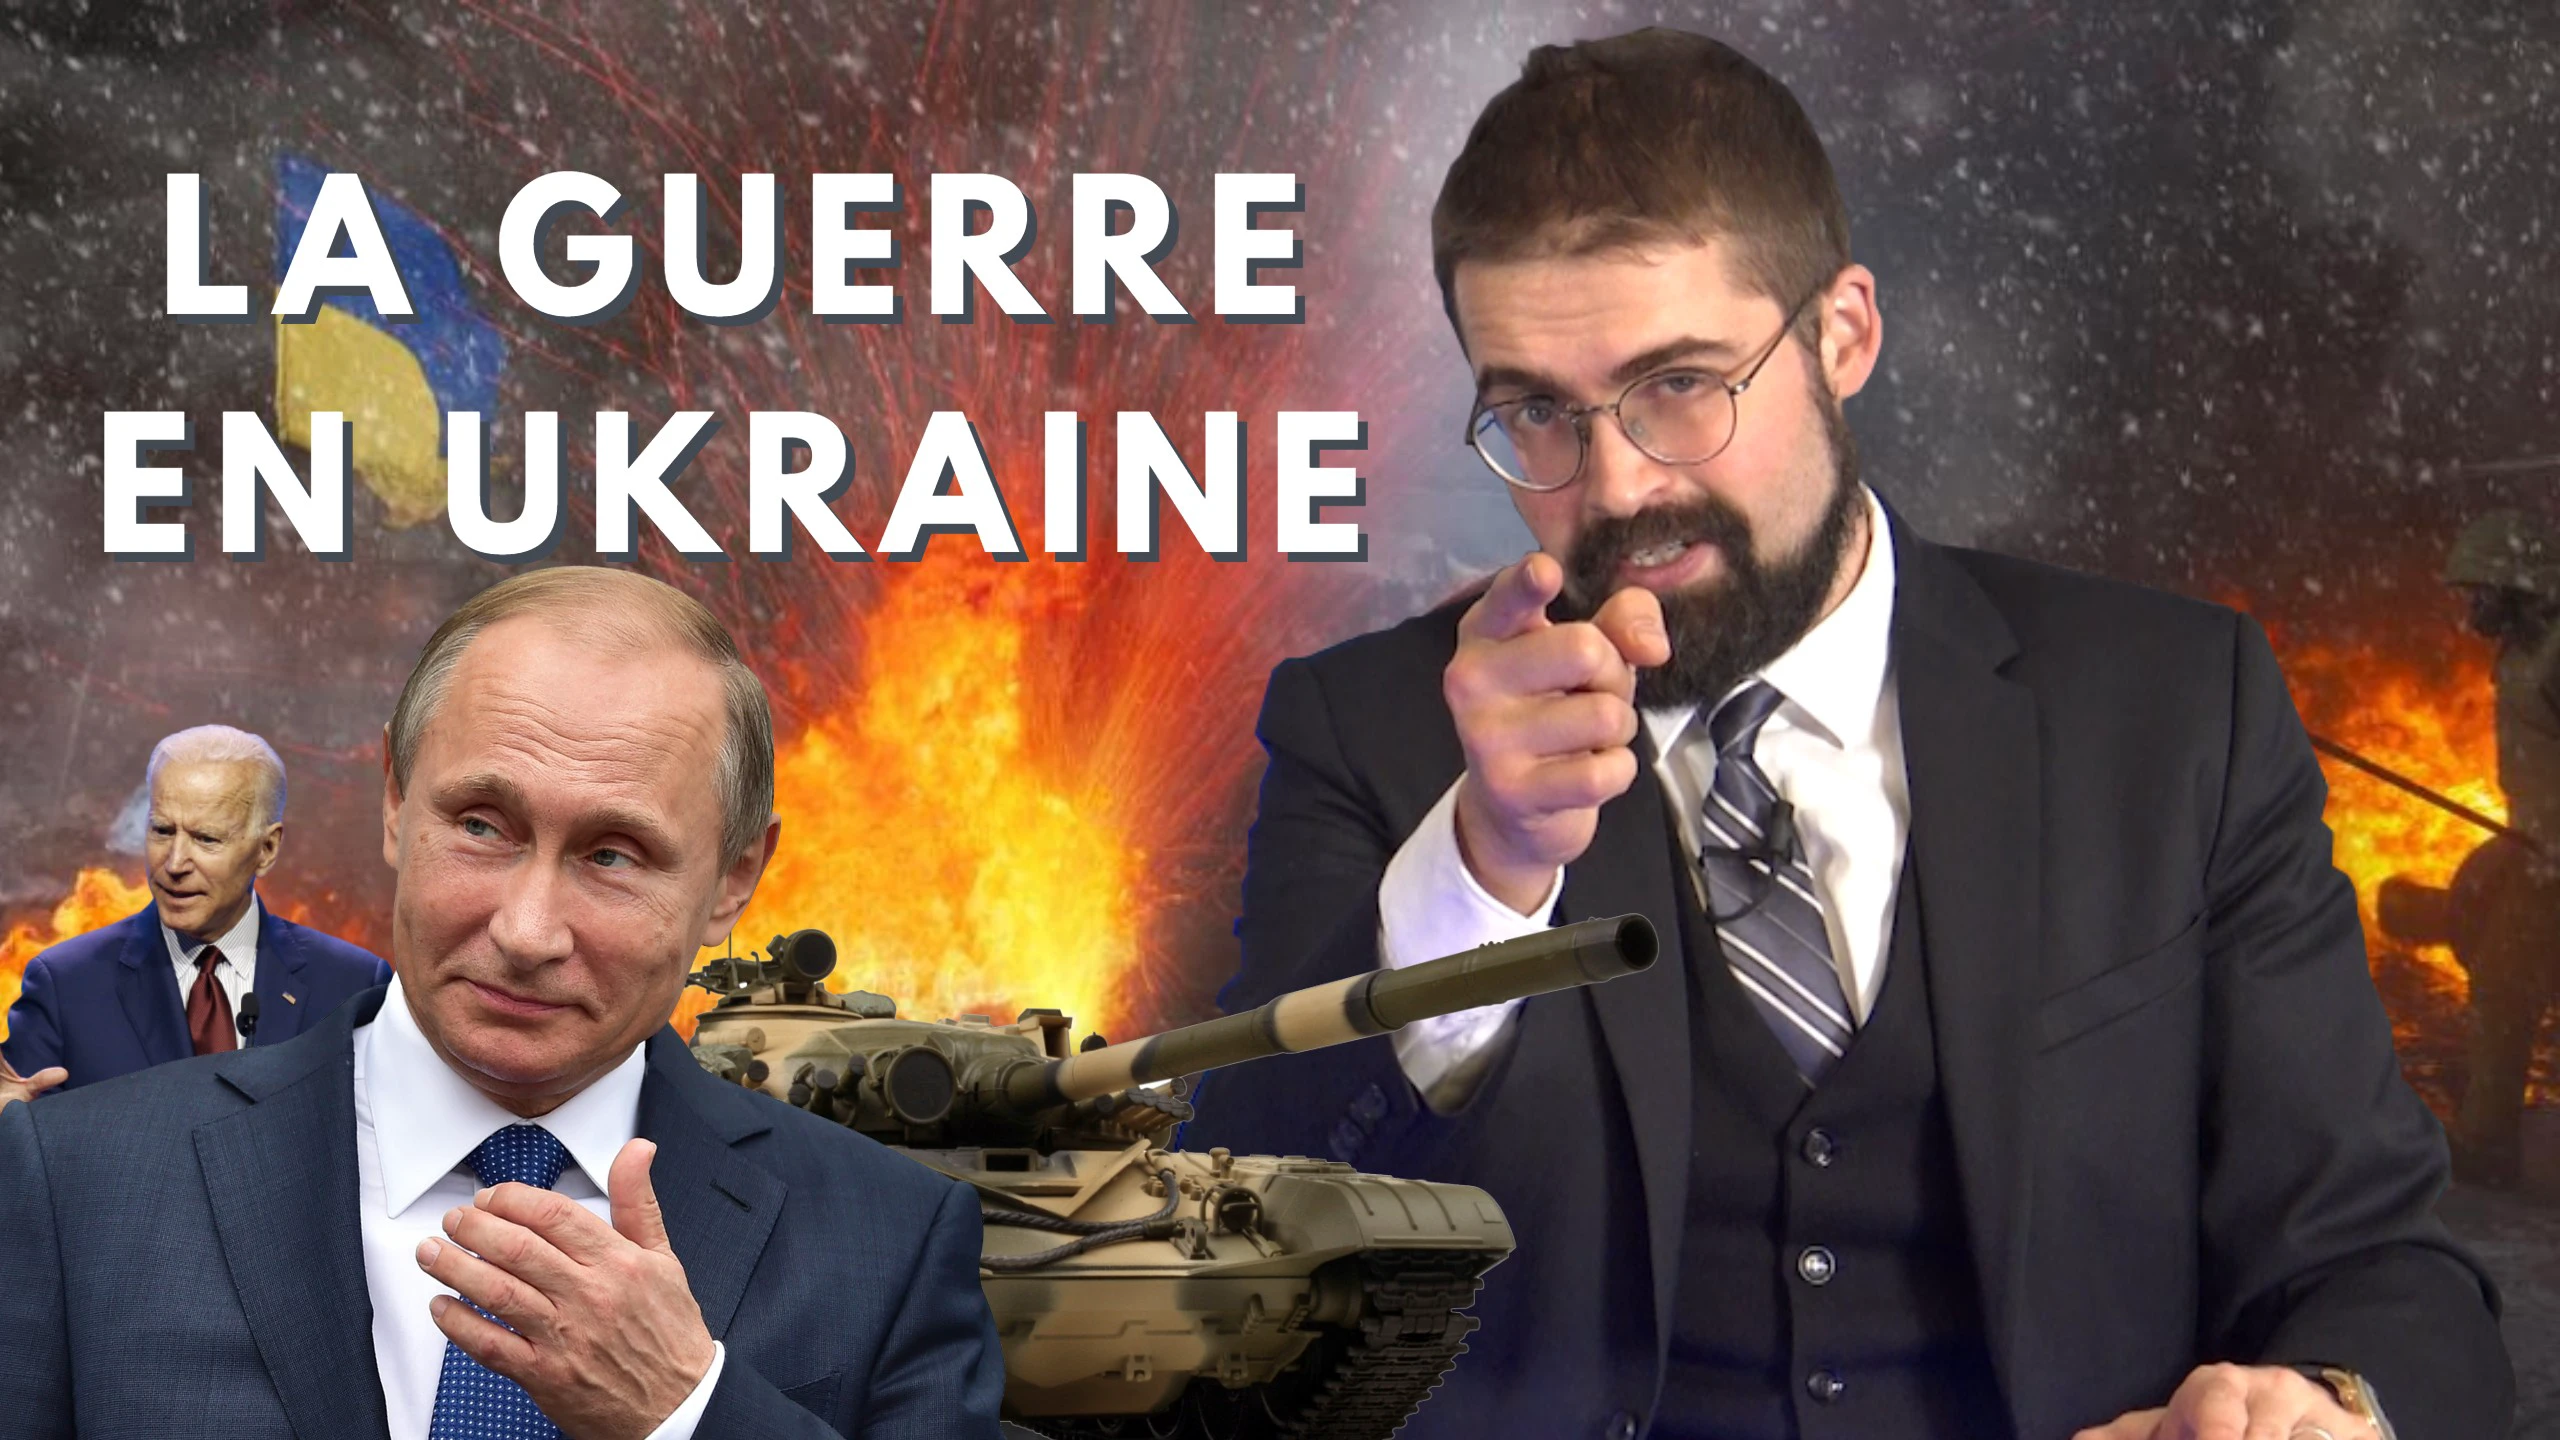 La guerre en Ukraine [EN DIRECT]